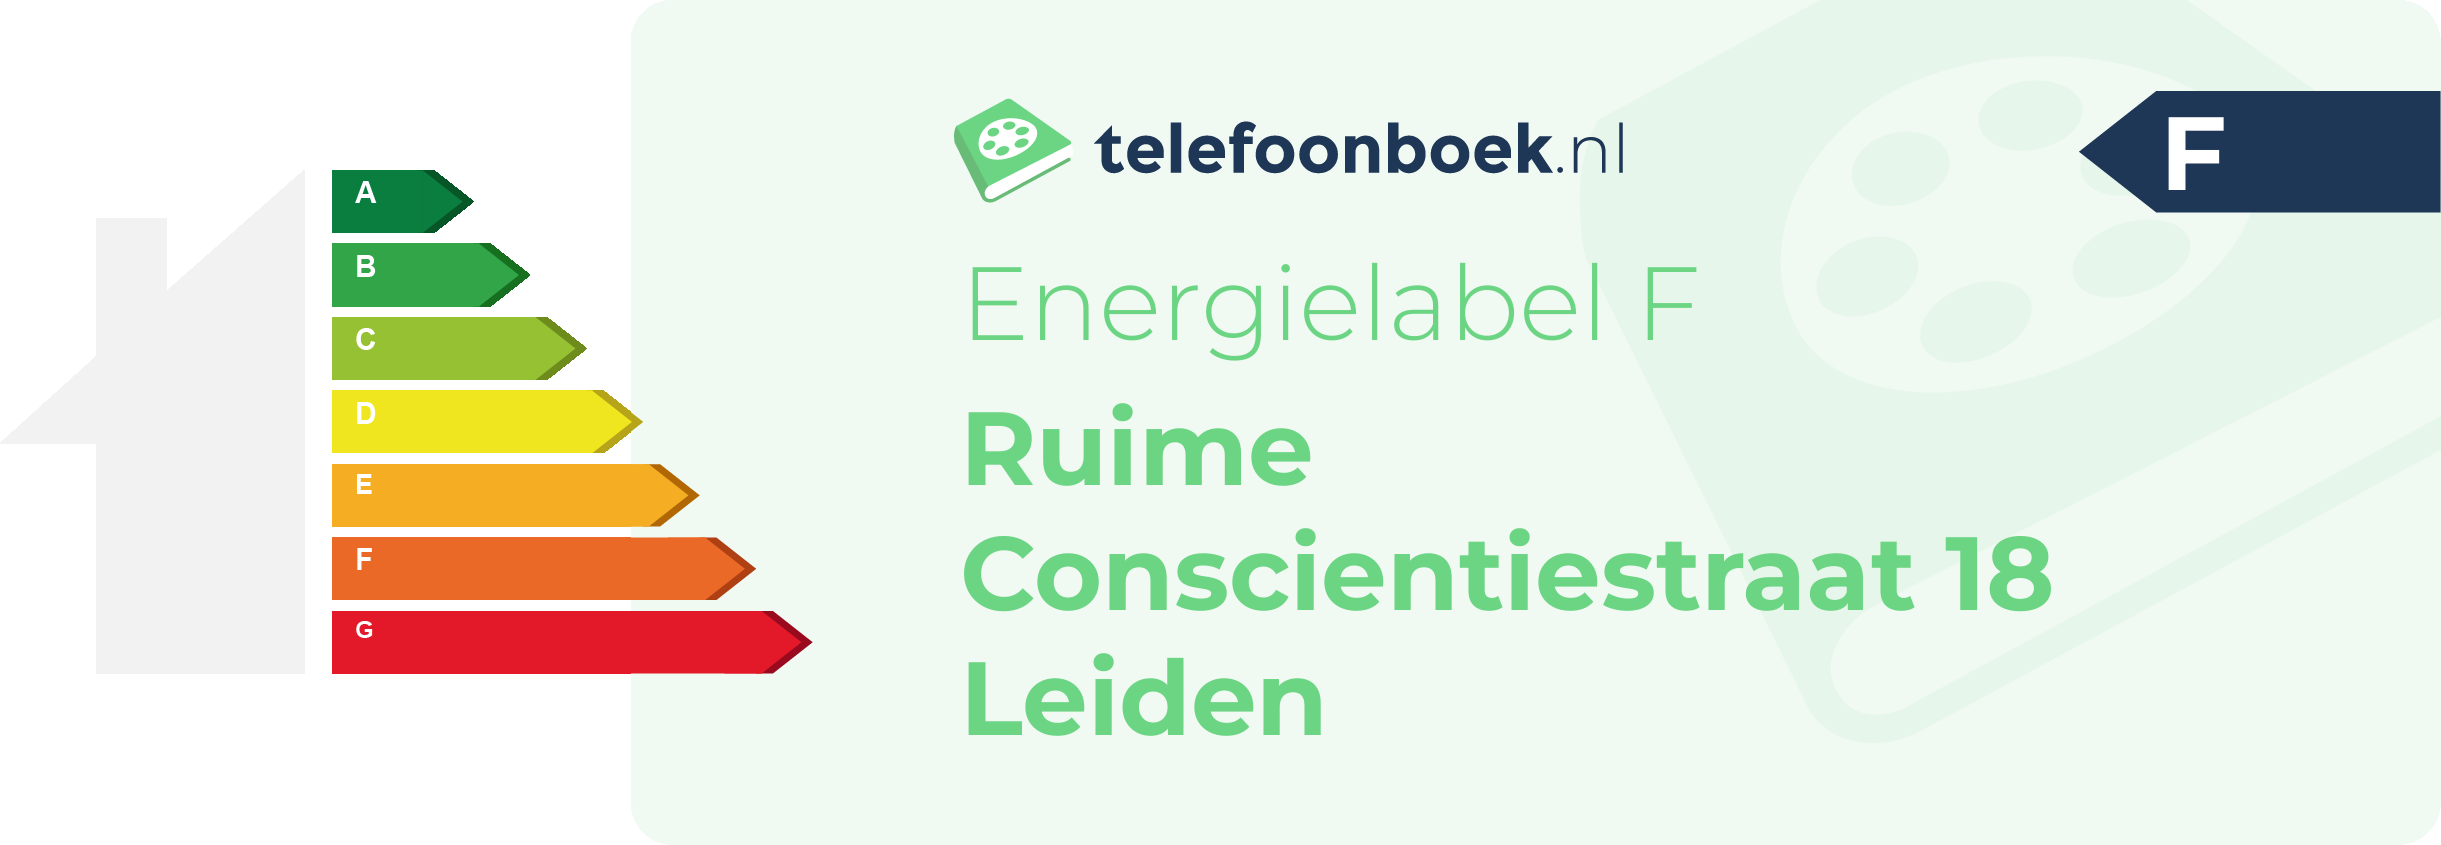 Energielabel Ruime Conscientiestraat 18 Leiden